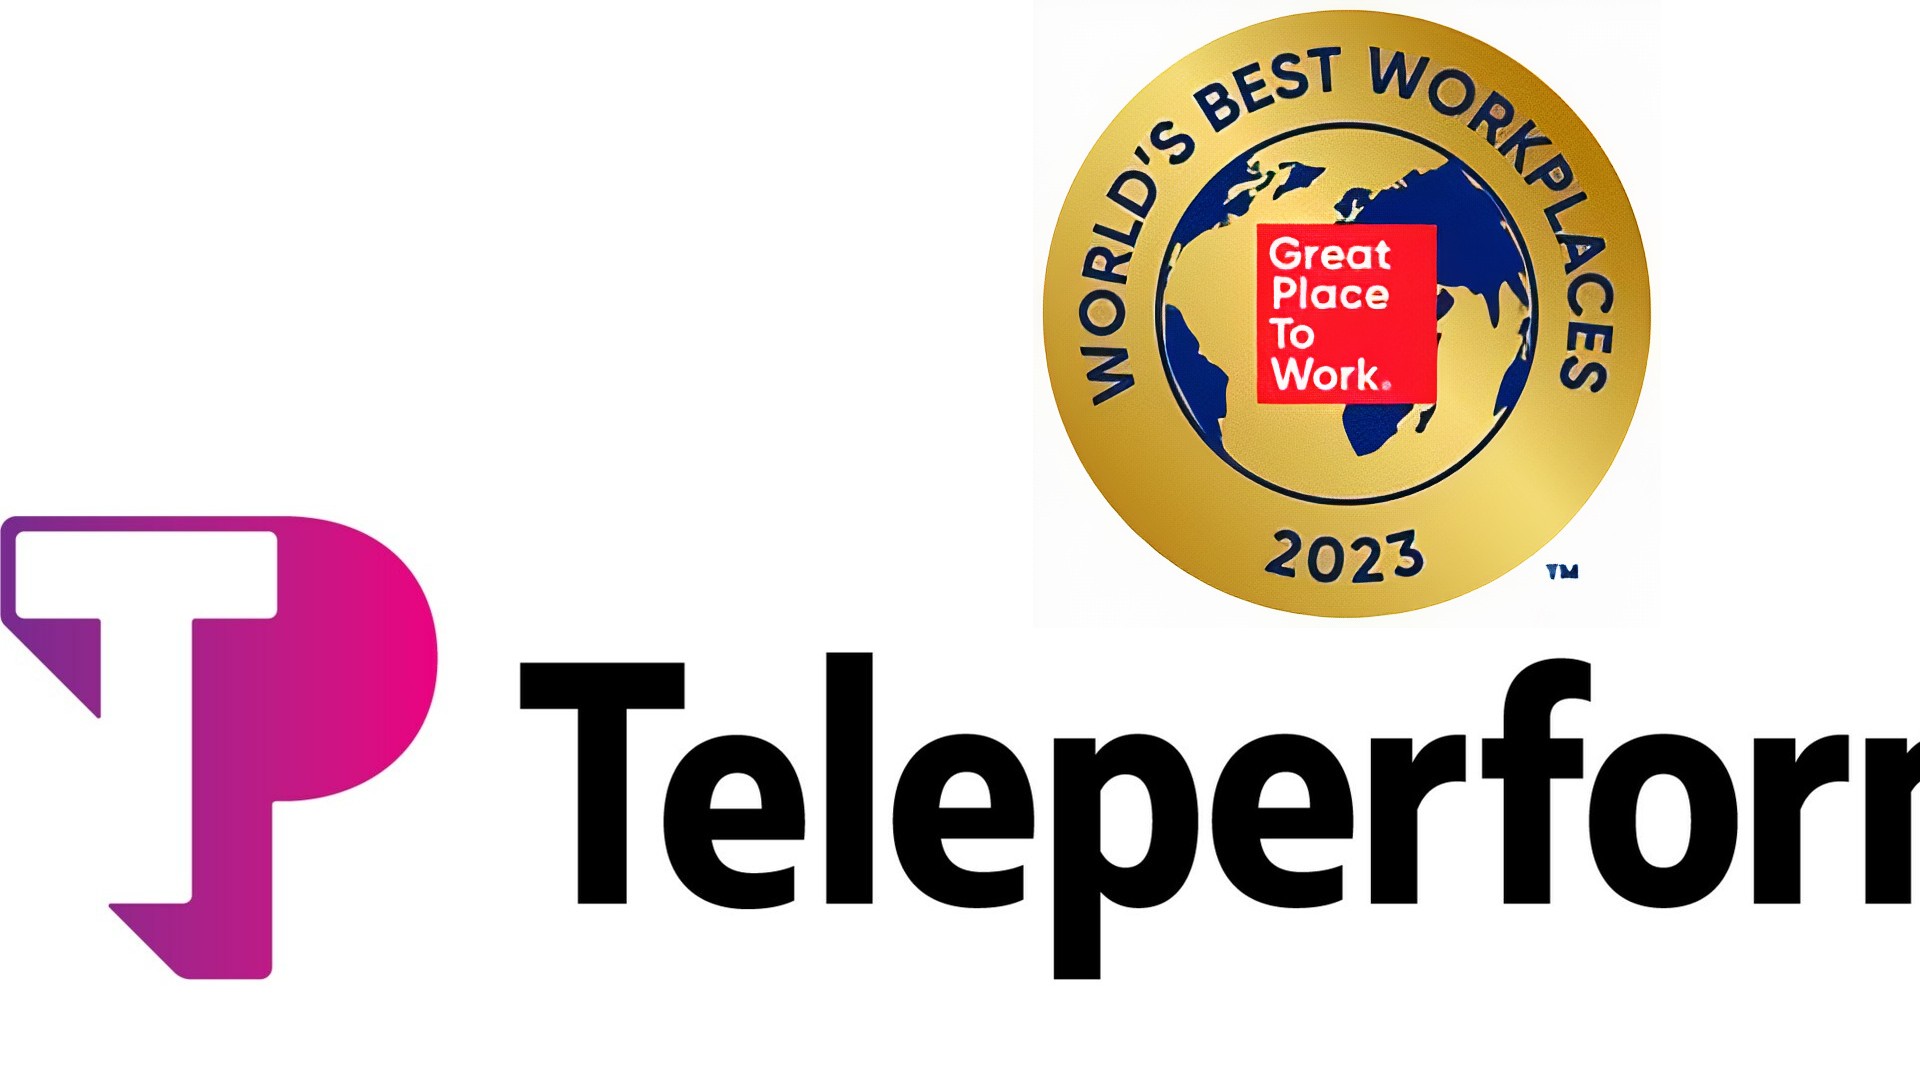 Teleperformance in Top 5 Beste Werkplek ter Wereld